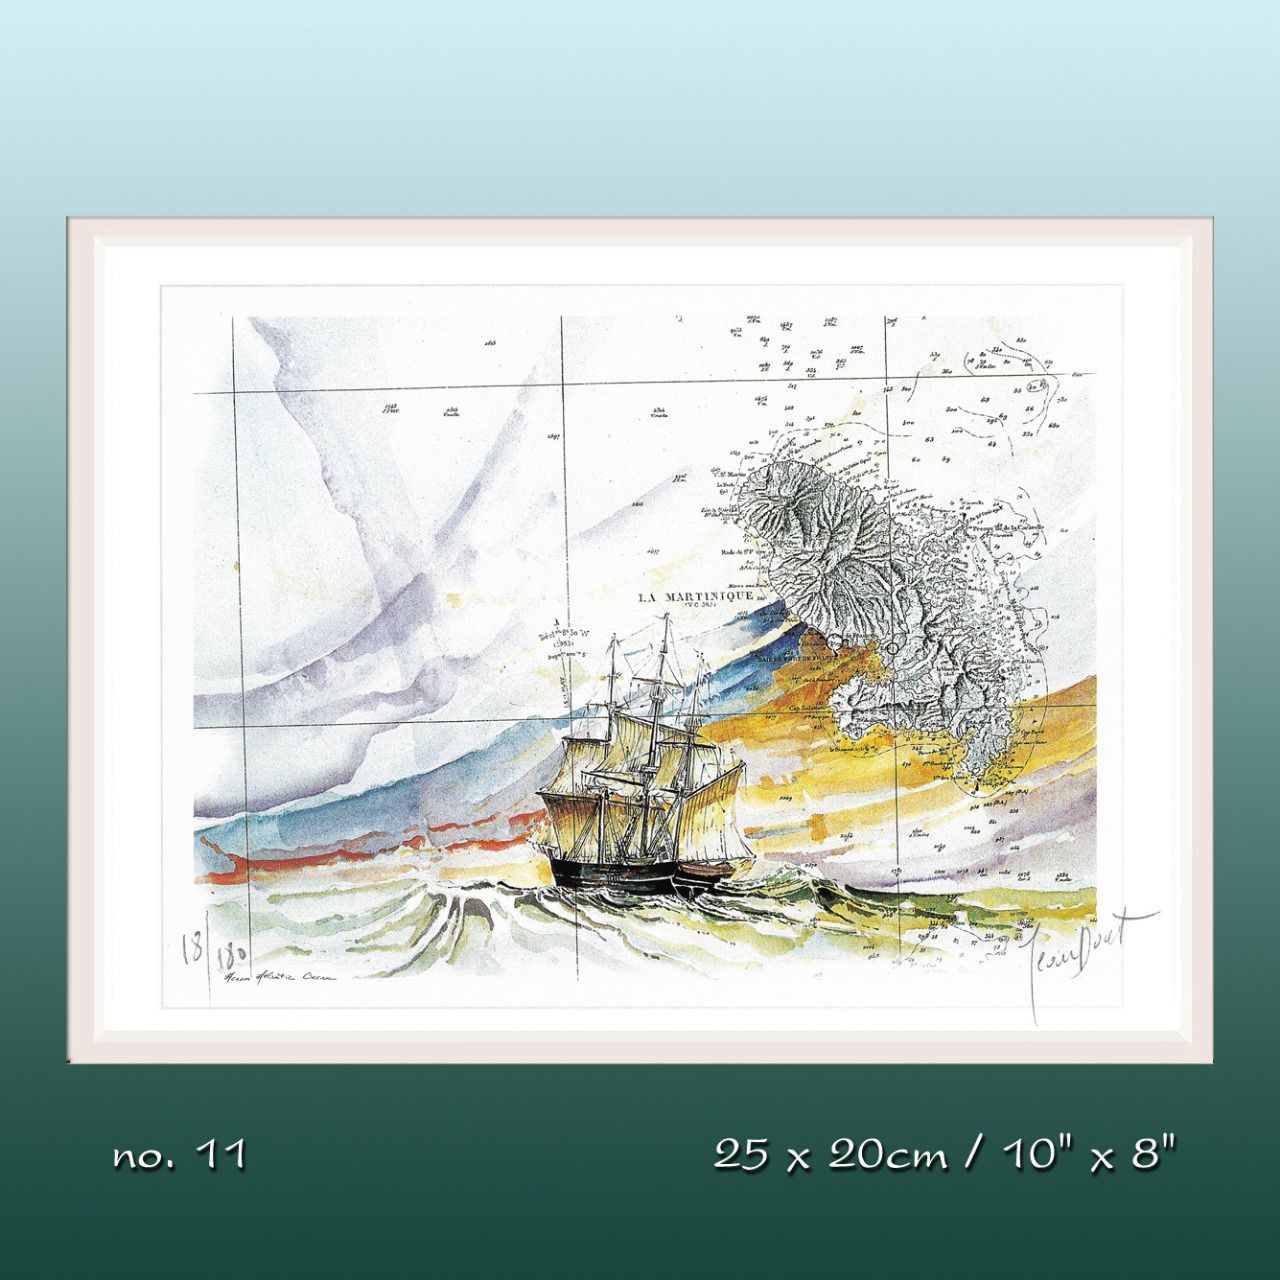  Aquarelle de J.Doat / 25 x 20 cm.............................No.11 / Le Grand Voyage,